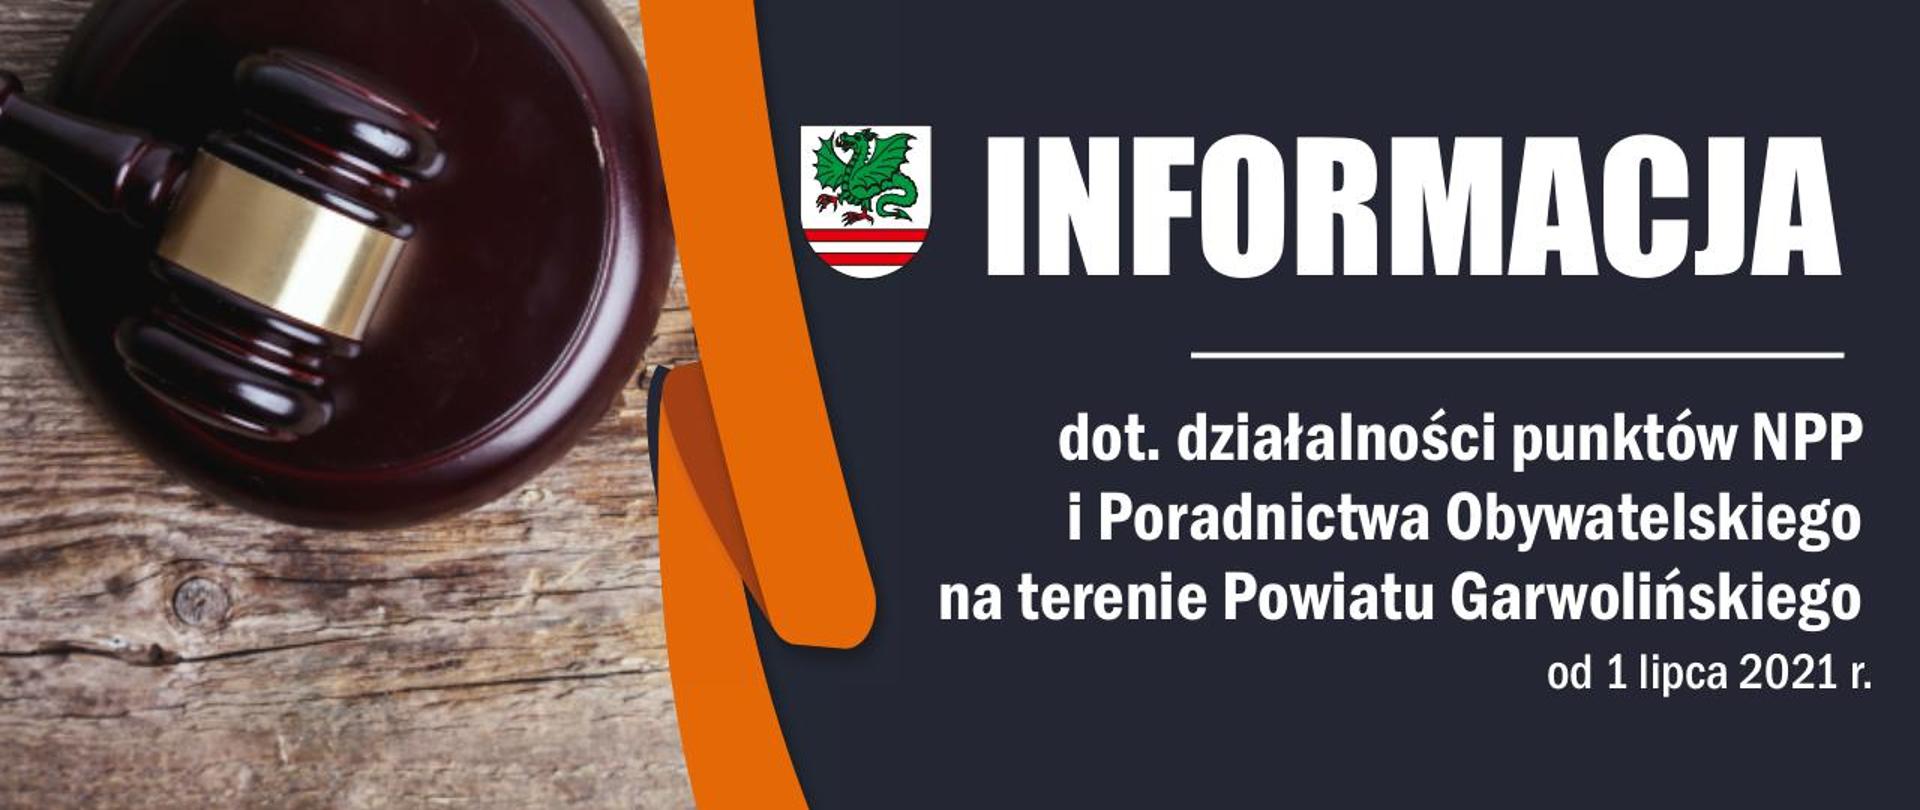 Informacja dot. działalności NPP i Poradnictwa Obywatelskiego na terenie Powiatu Garwolińskiego 